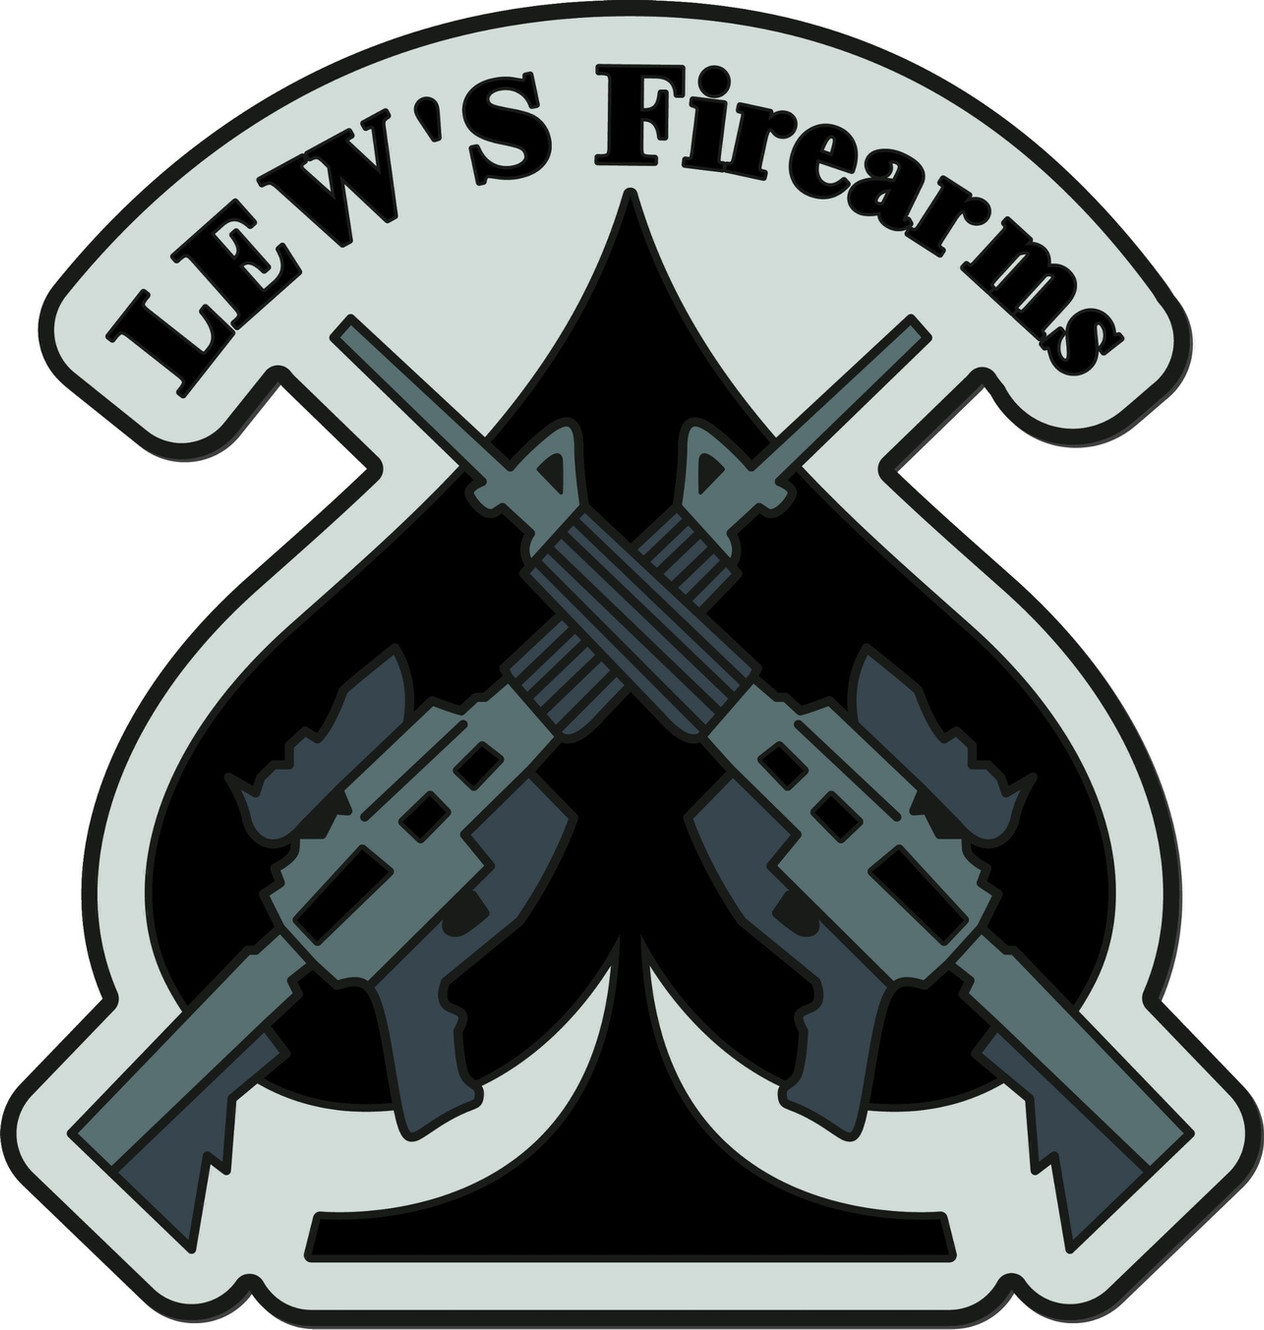 www.lewsfirearms.com